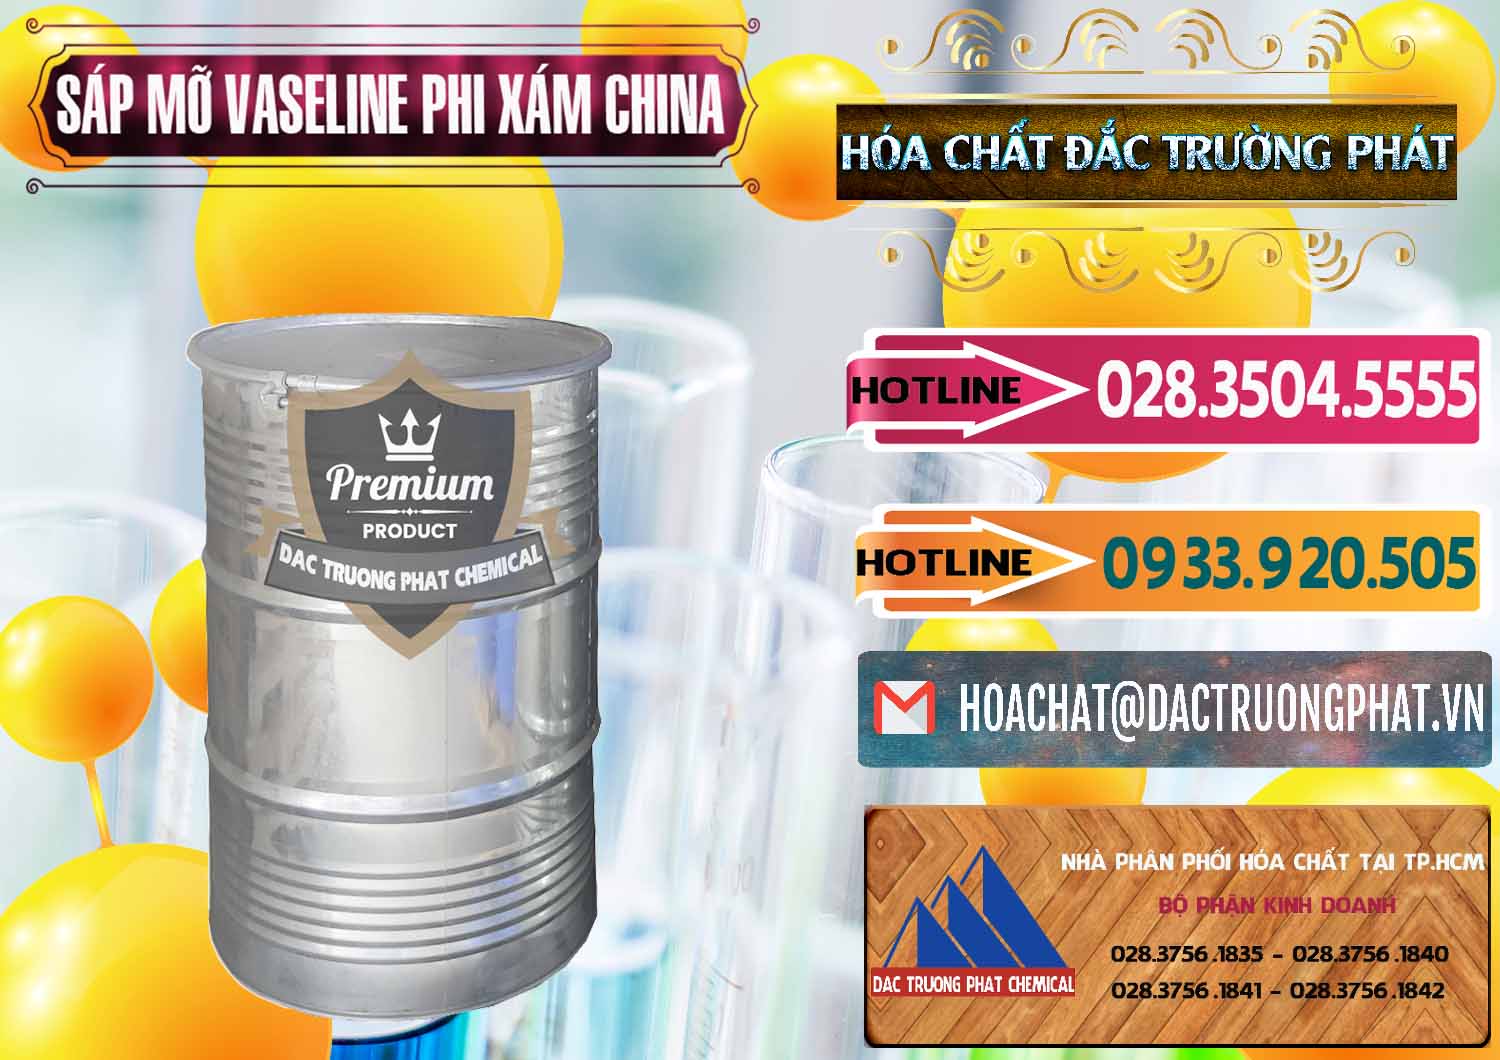 Cty chuyên bán - cung cấp Sáp Mỡ Vaseline Phi Xám Trung Quốc China - 0291 - Đơn vị chuyên cung cấp _ nhập khẩu hóa chất tại TP.HCM - dactruongphat.vn